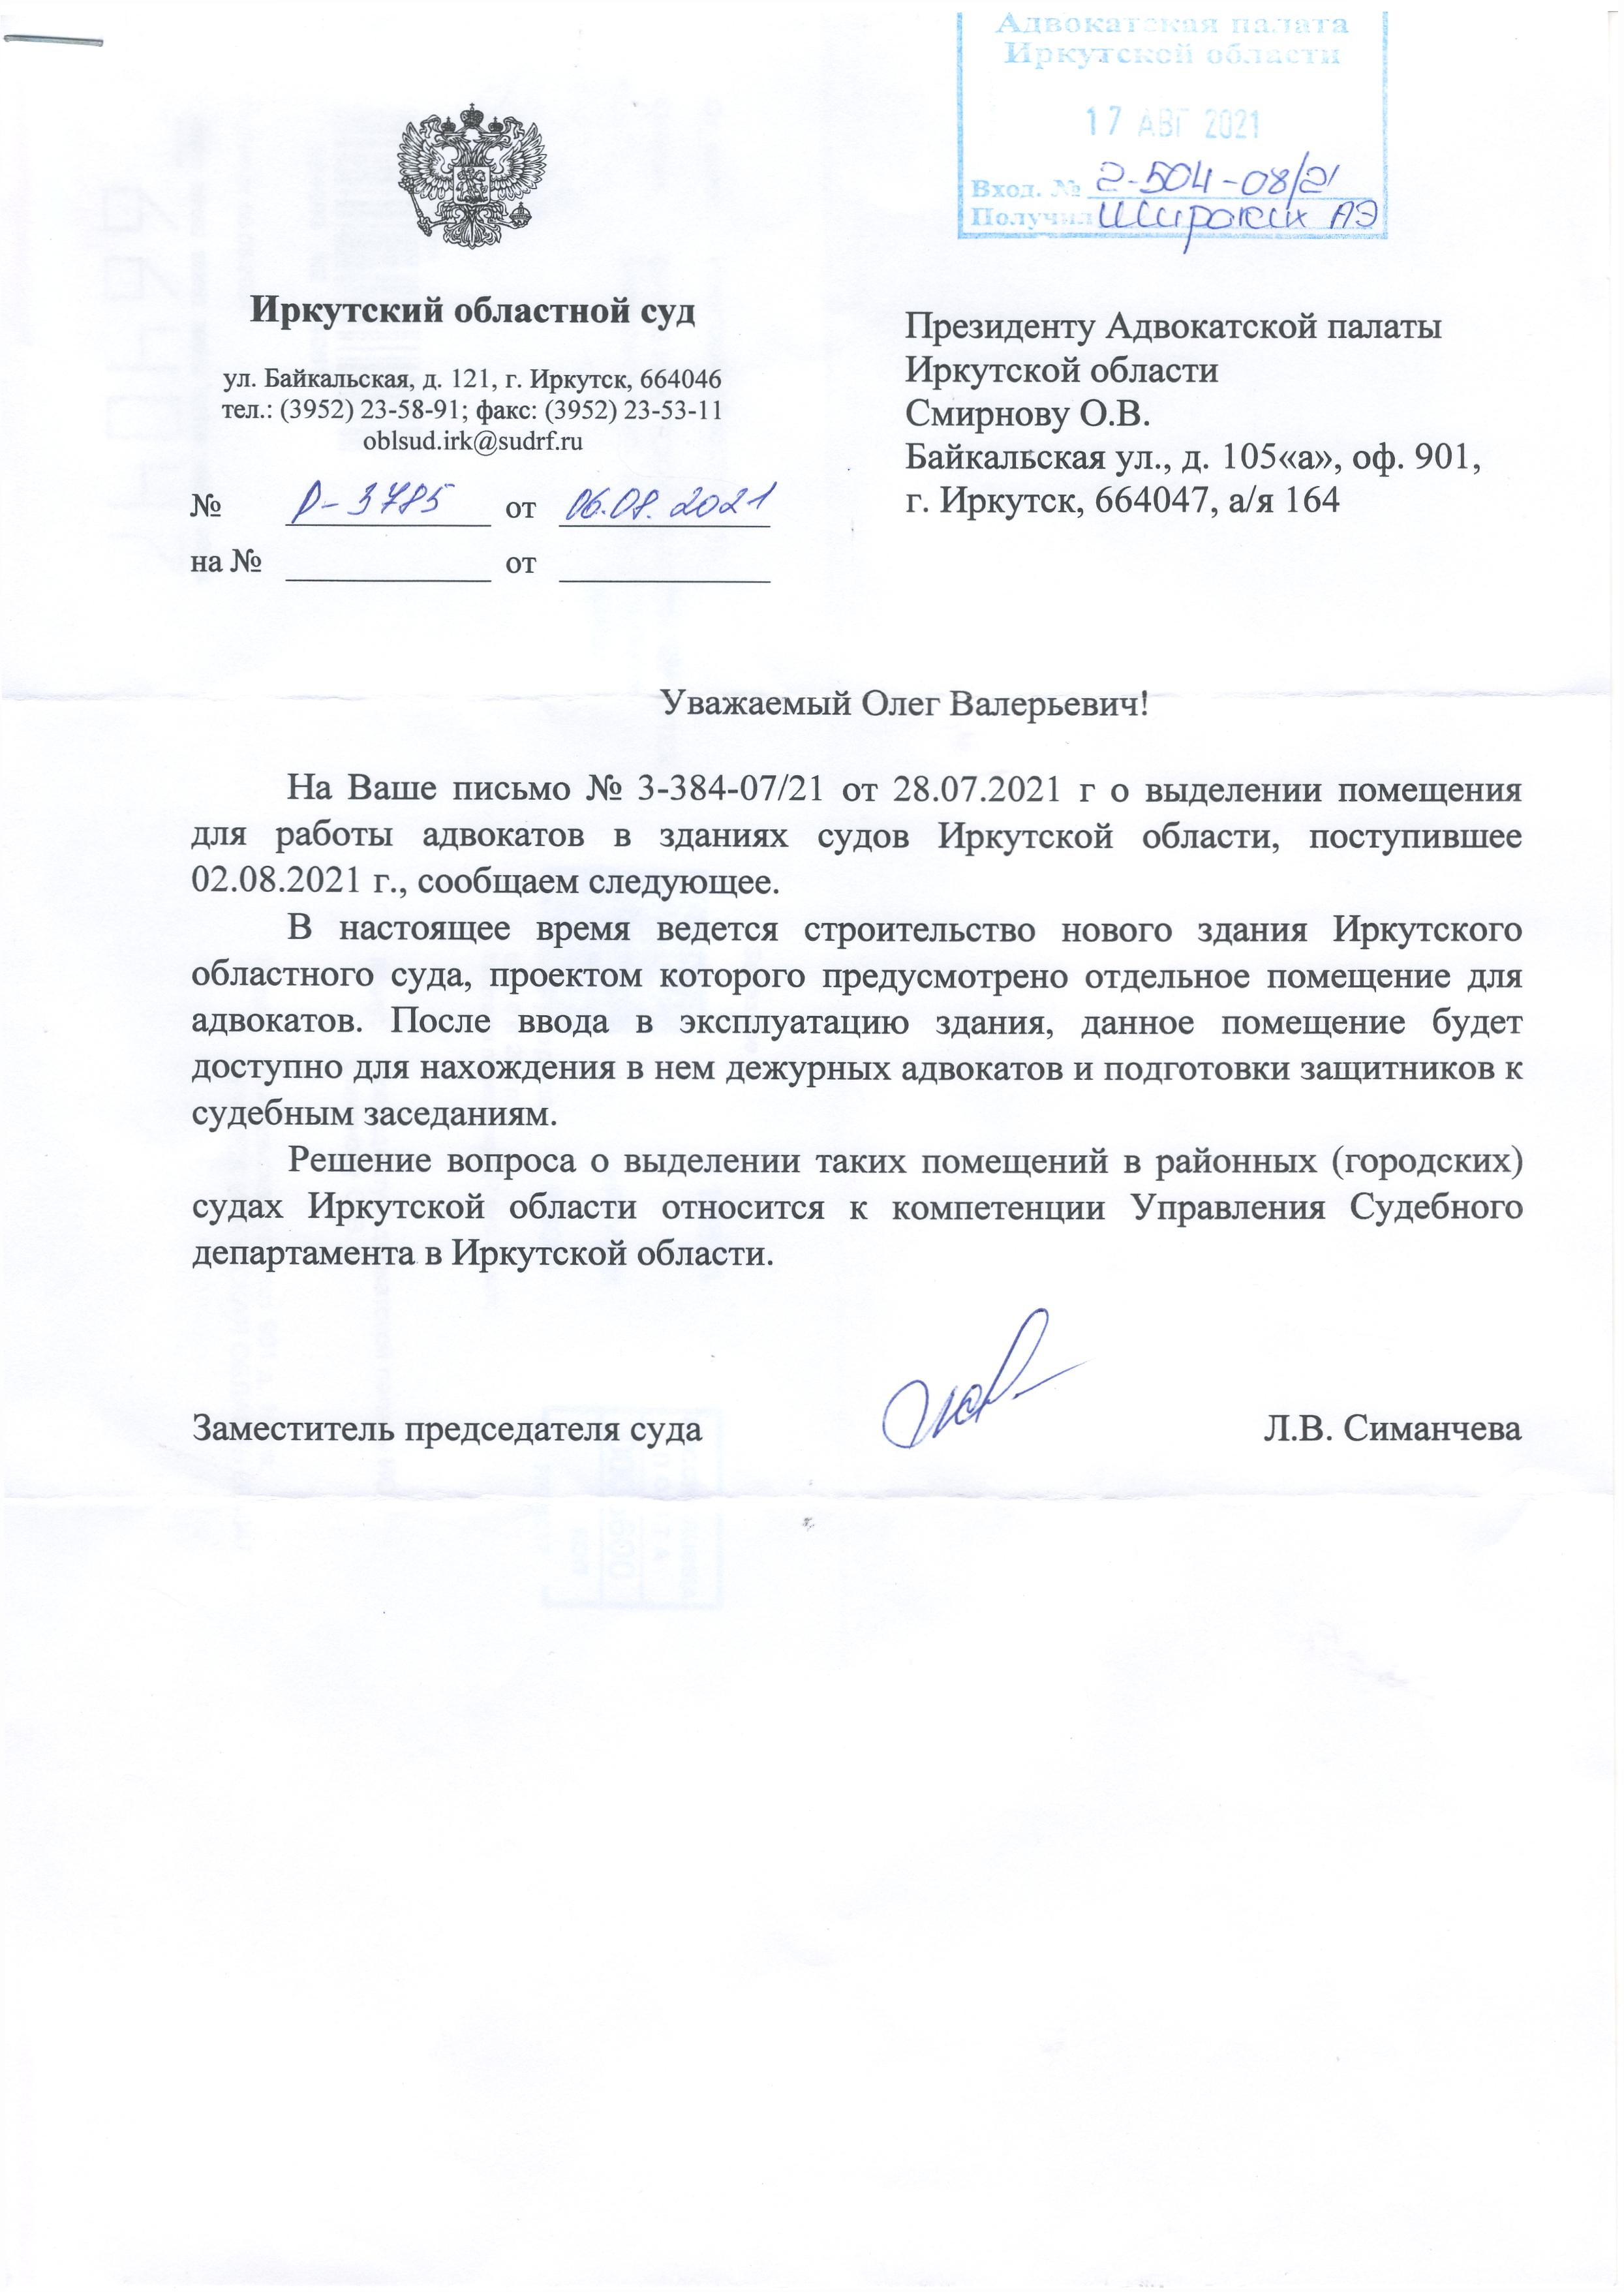 O predostavlenii pomeshheniya dlya advokatov v Irkutskom oblastnom sude.jpg